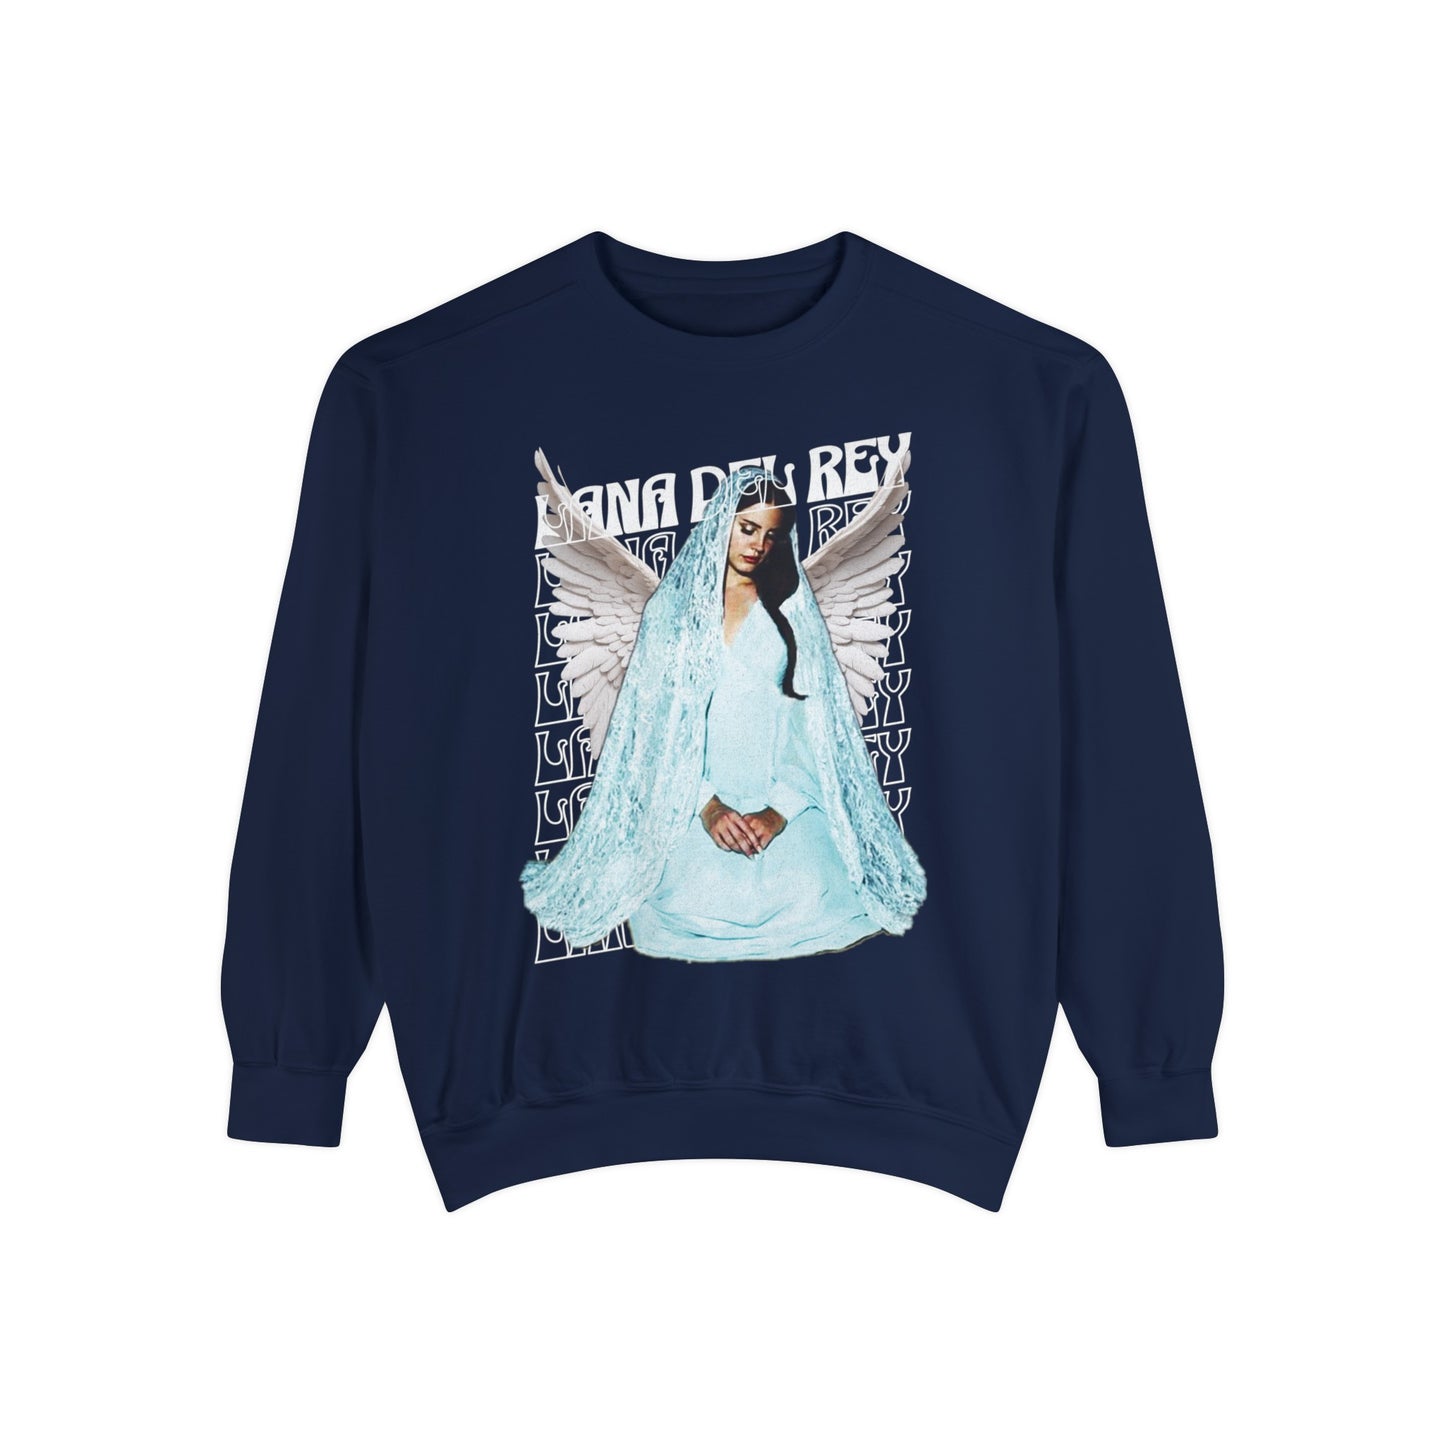 Lana Del Rey Sweatshirt True Navy